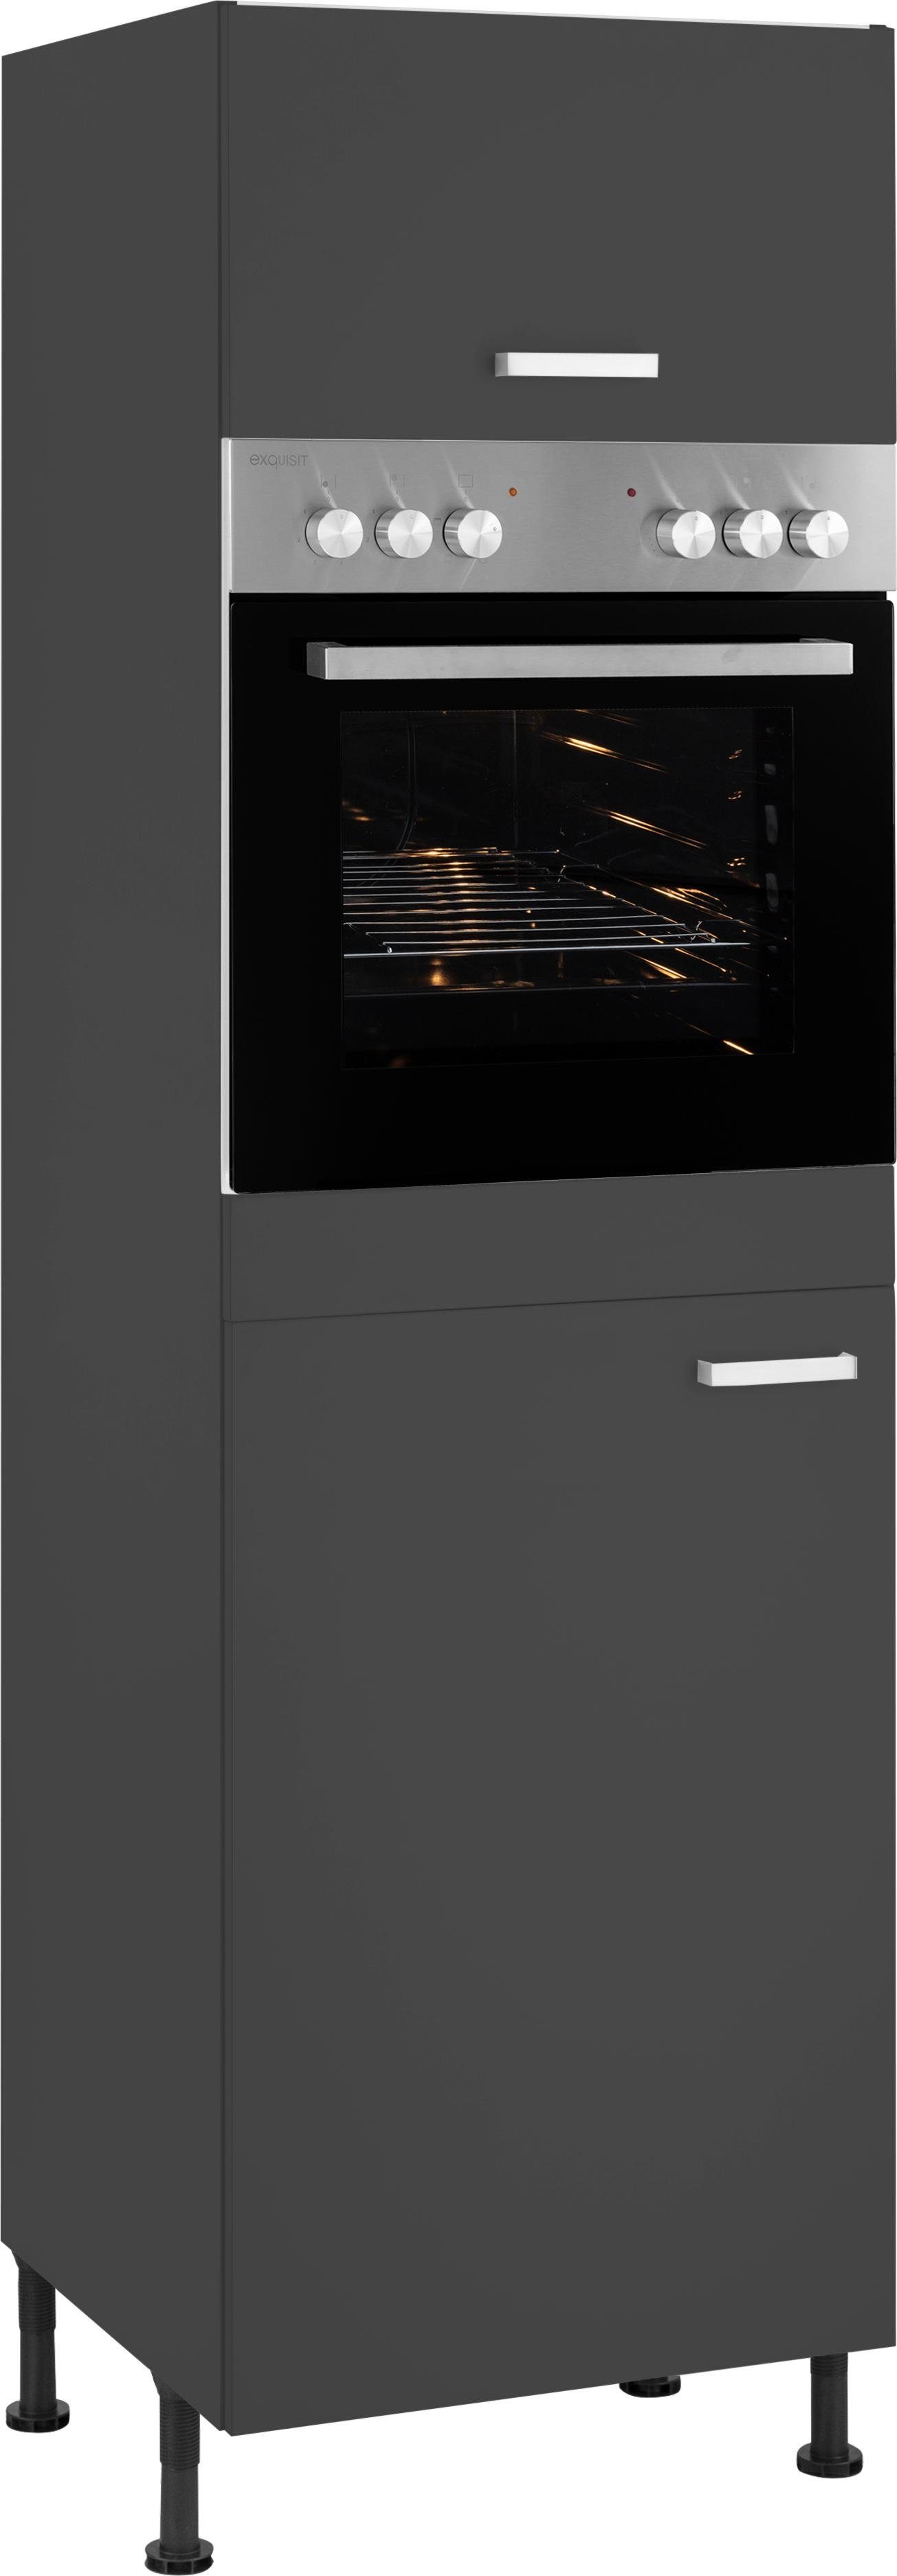 OPTIFIT Oven/koelkastombouw Parma Breedte 60 cm